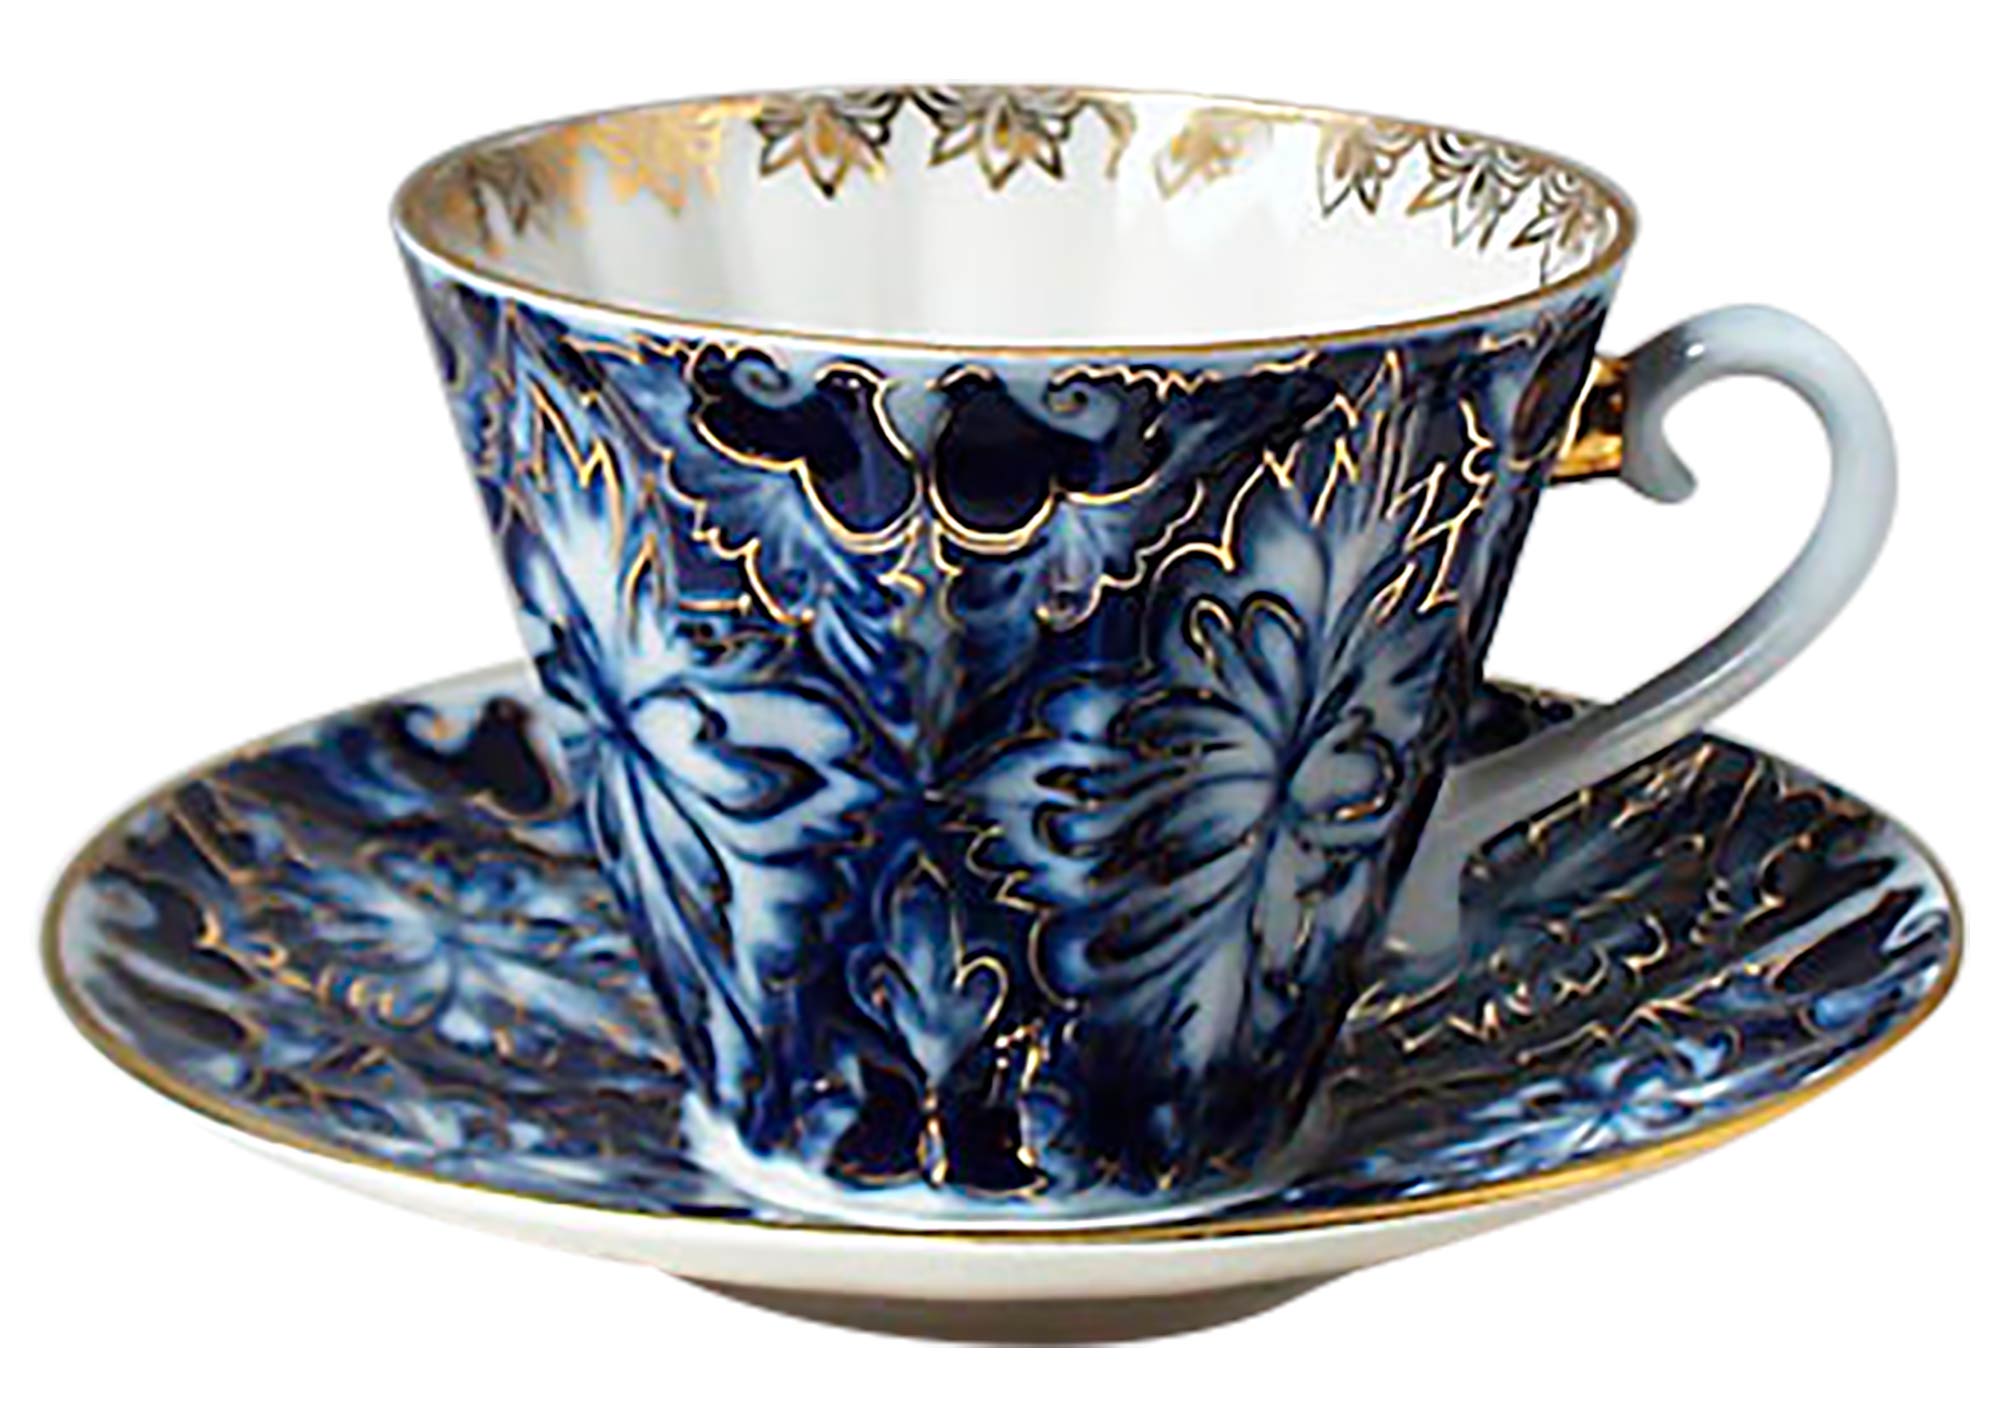 Buy Grouse Tea Cup w Saucer at GoldenCockerel.com